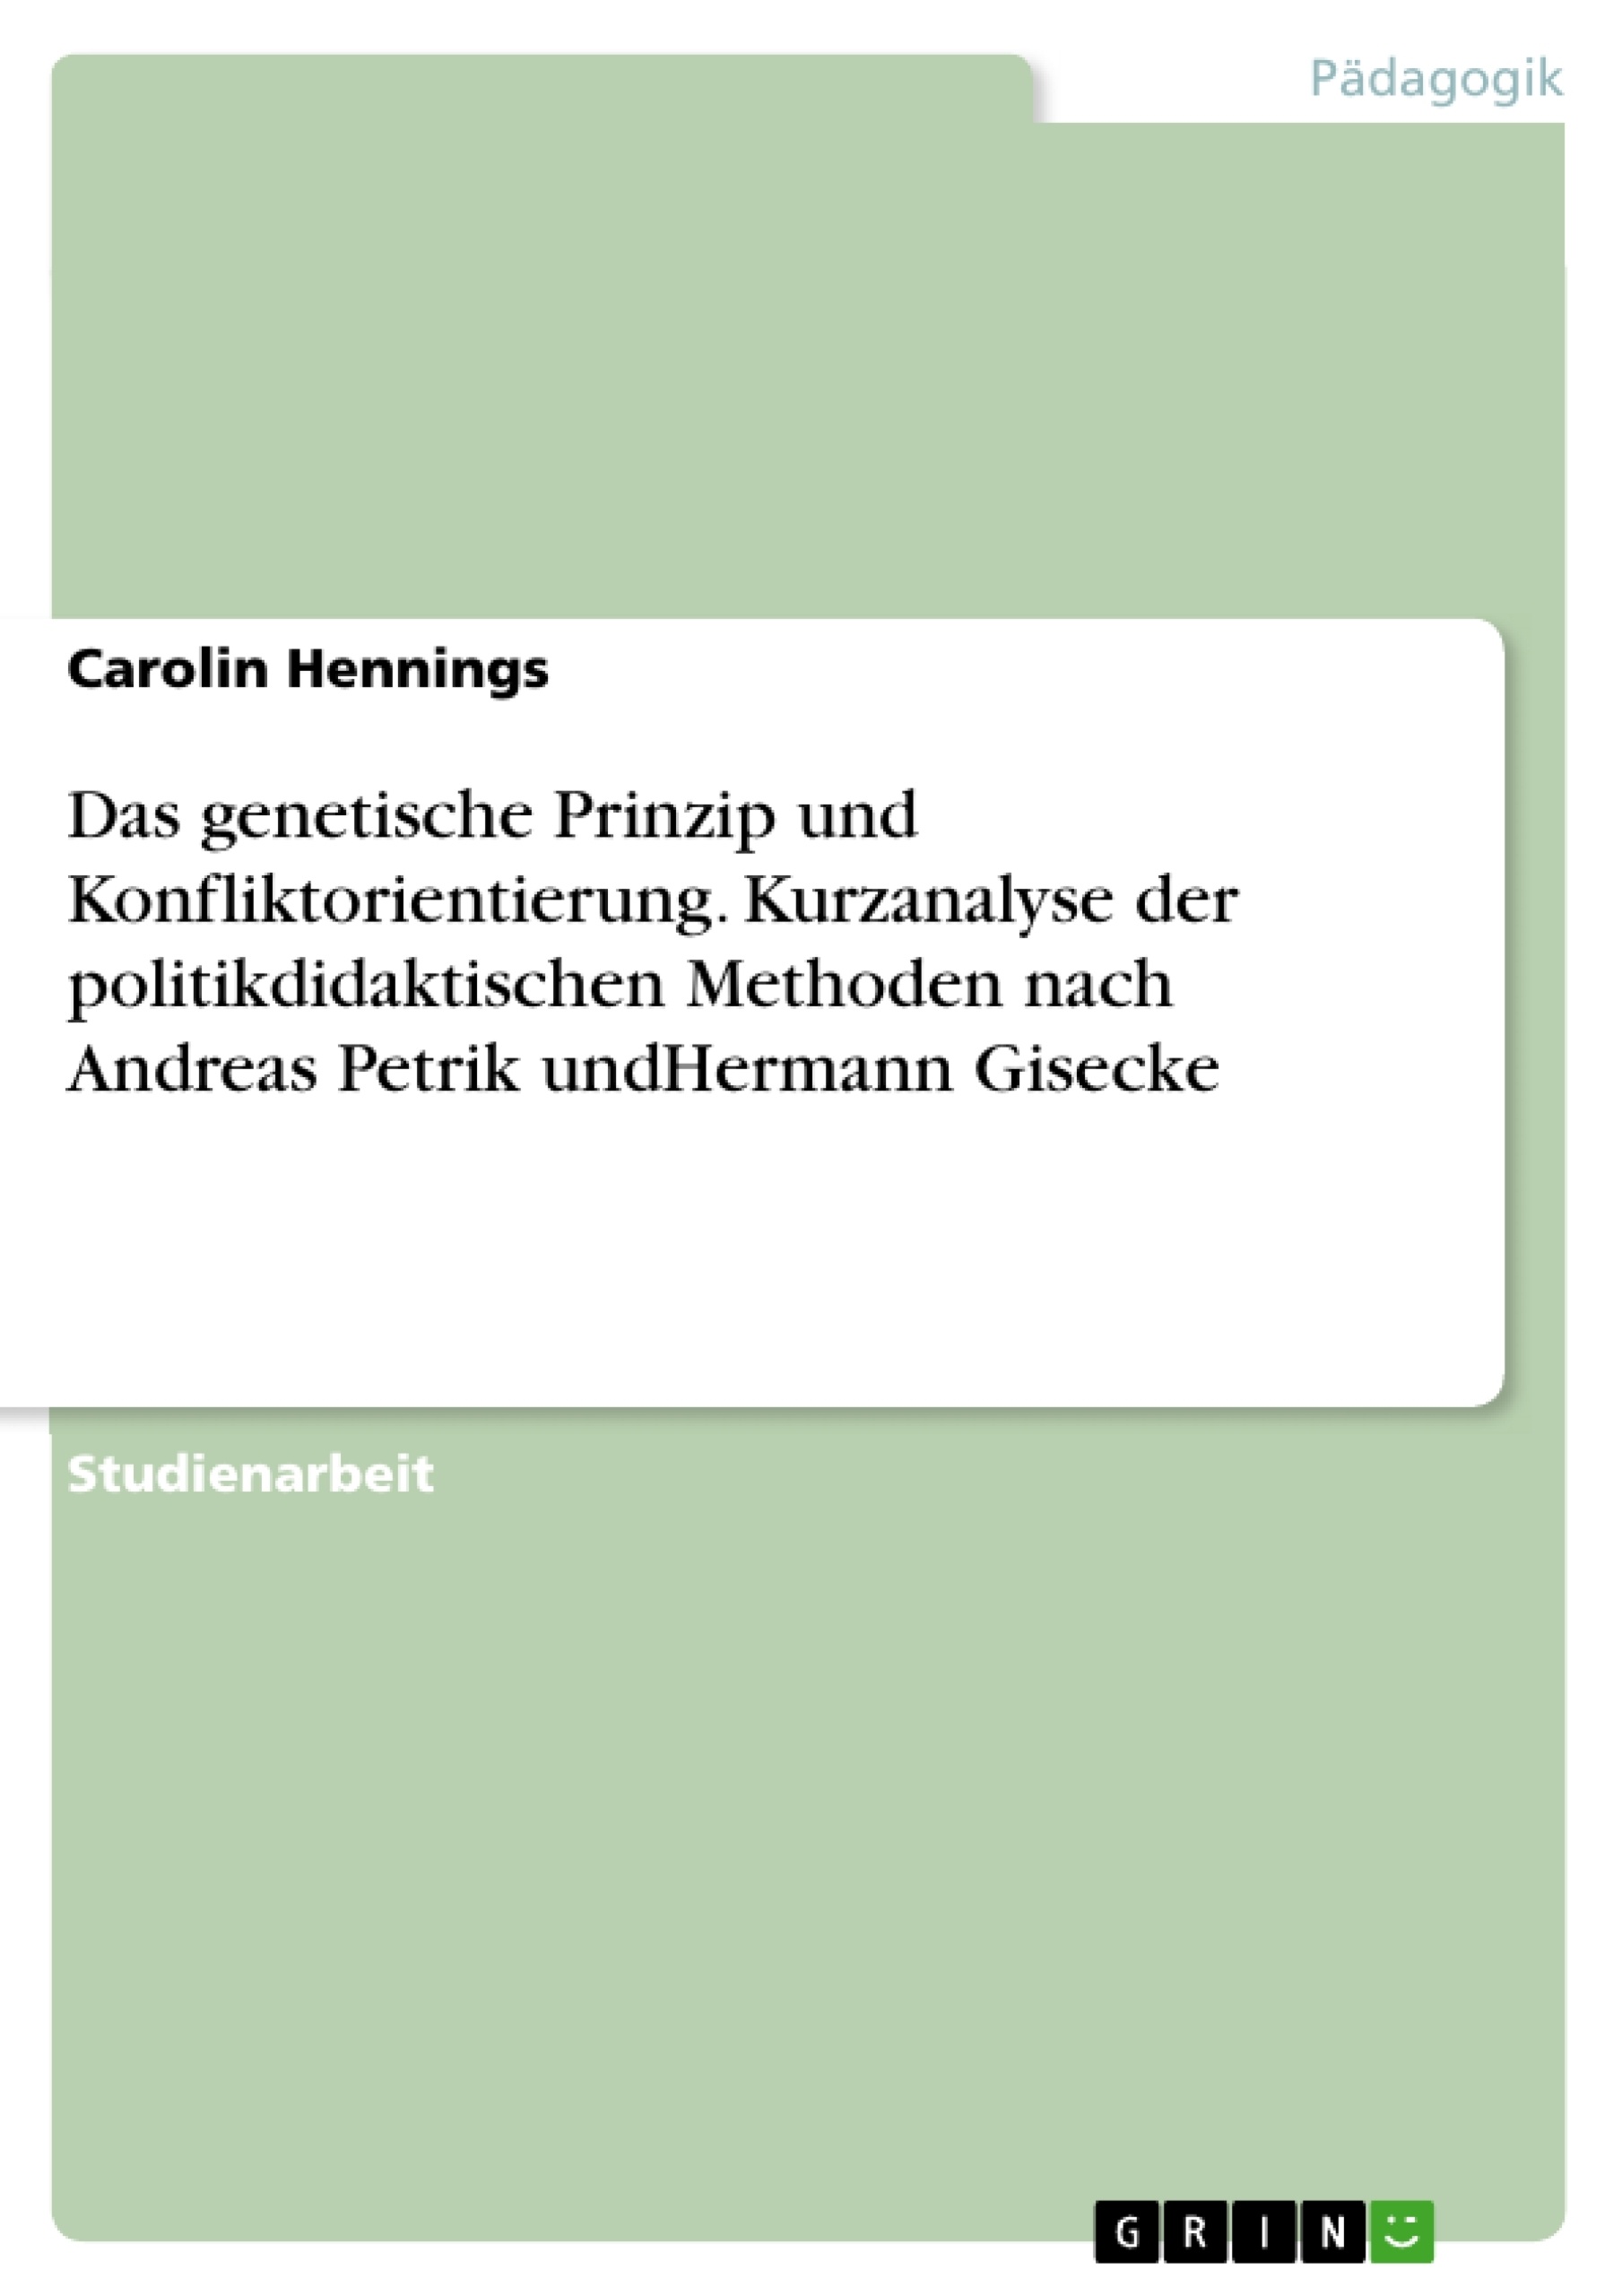 Title: Das genetische Prinzip und Konfliktorientierung. Kurzanalyse der politikdidaktischen Methoden nach Andreas Petrik undHermann Gisecke